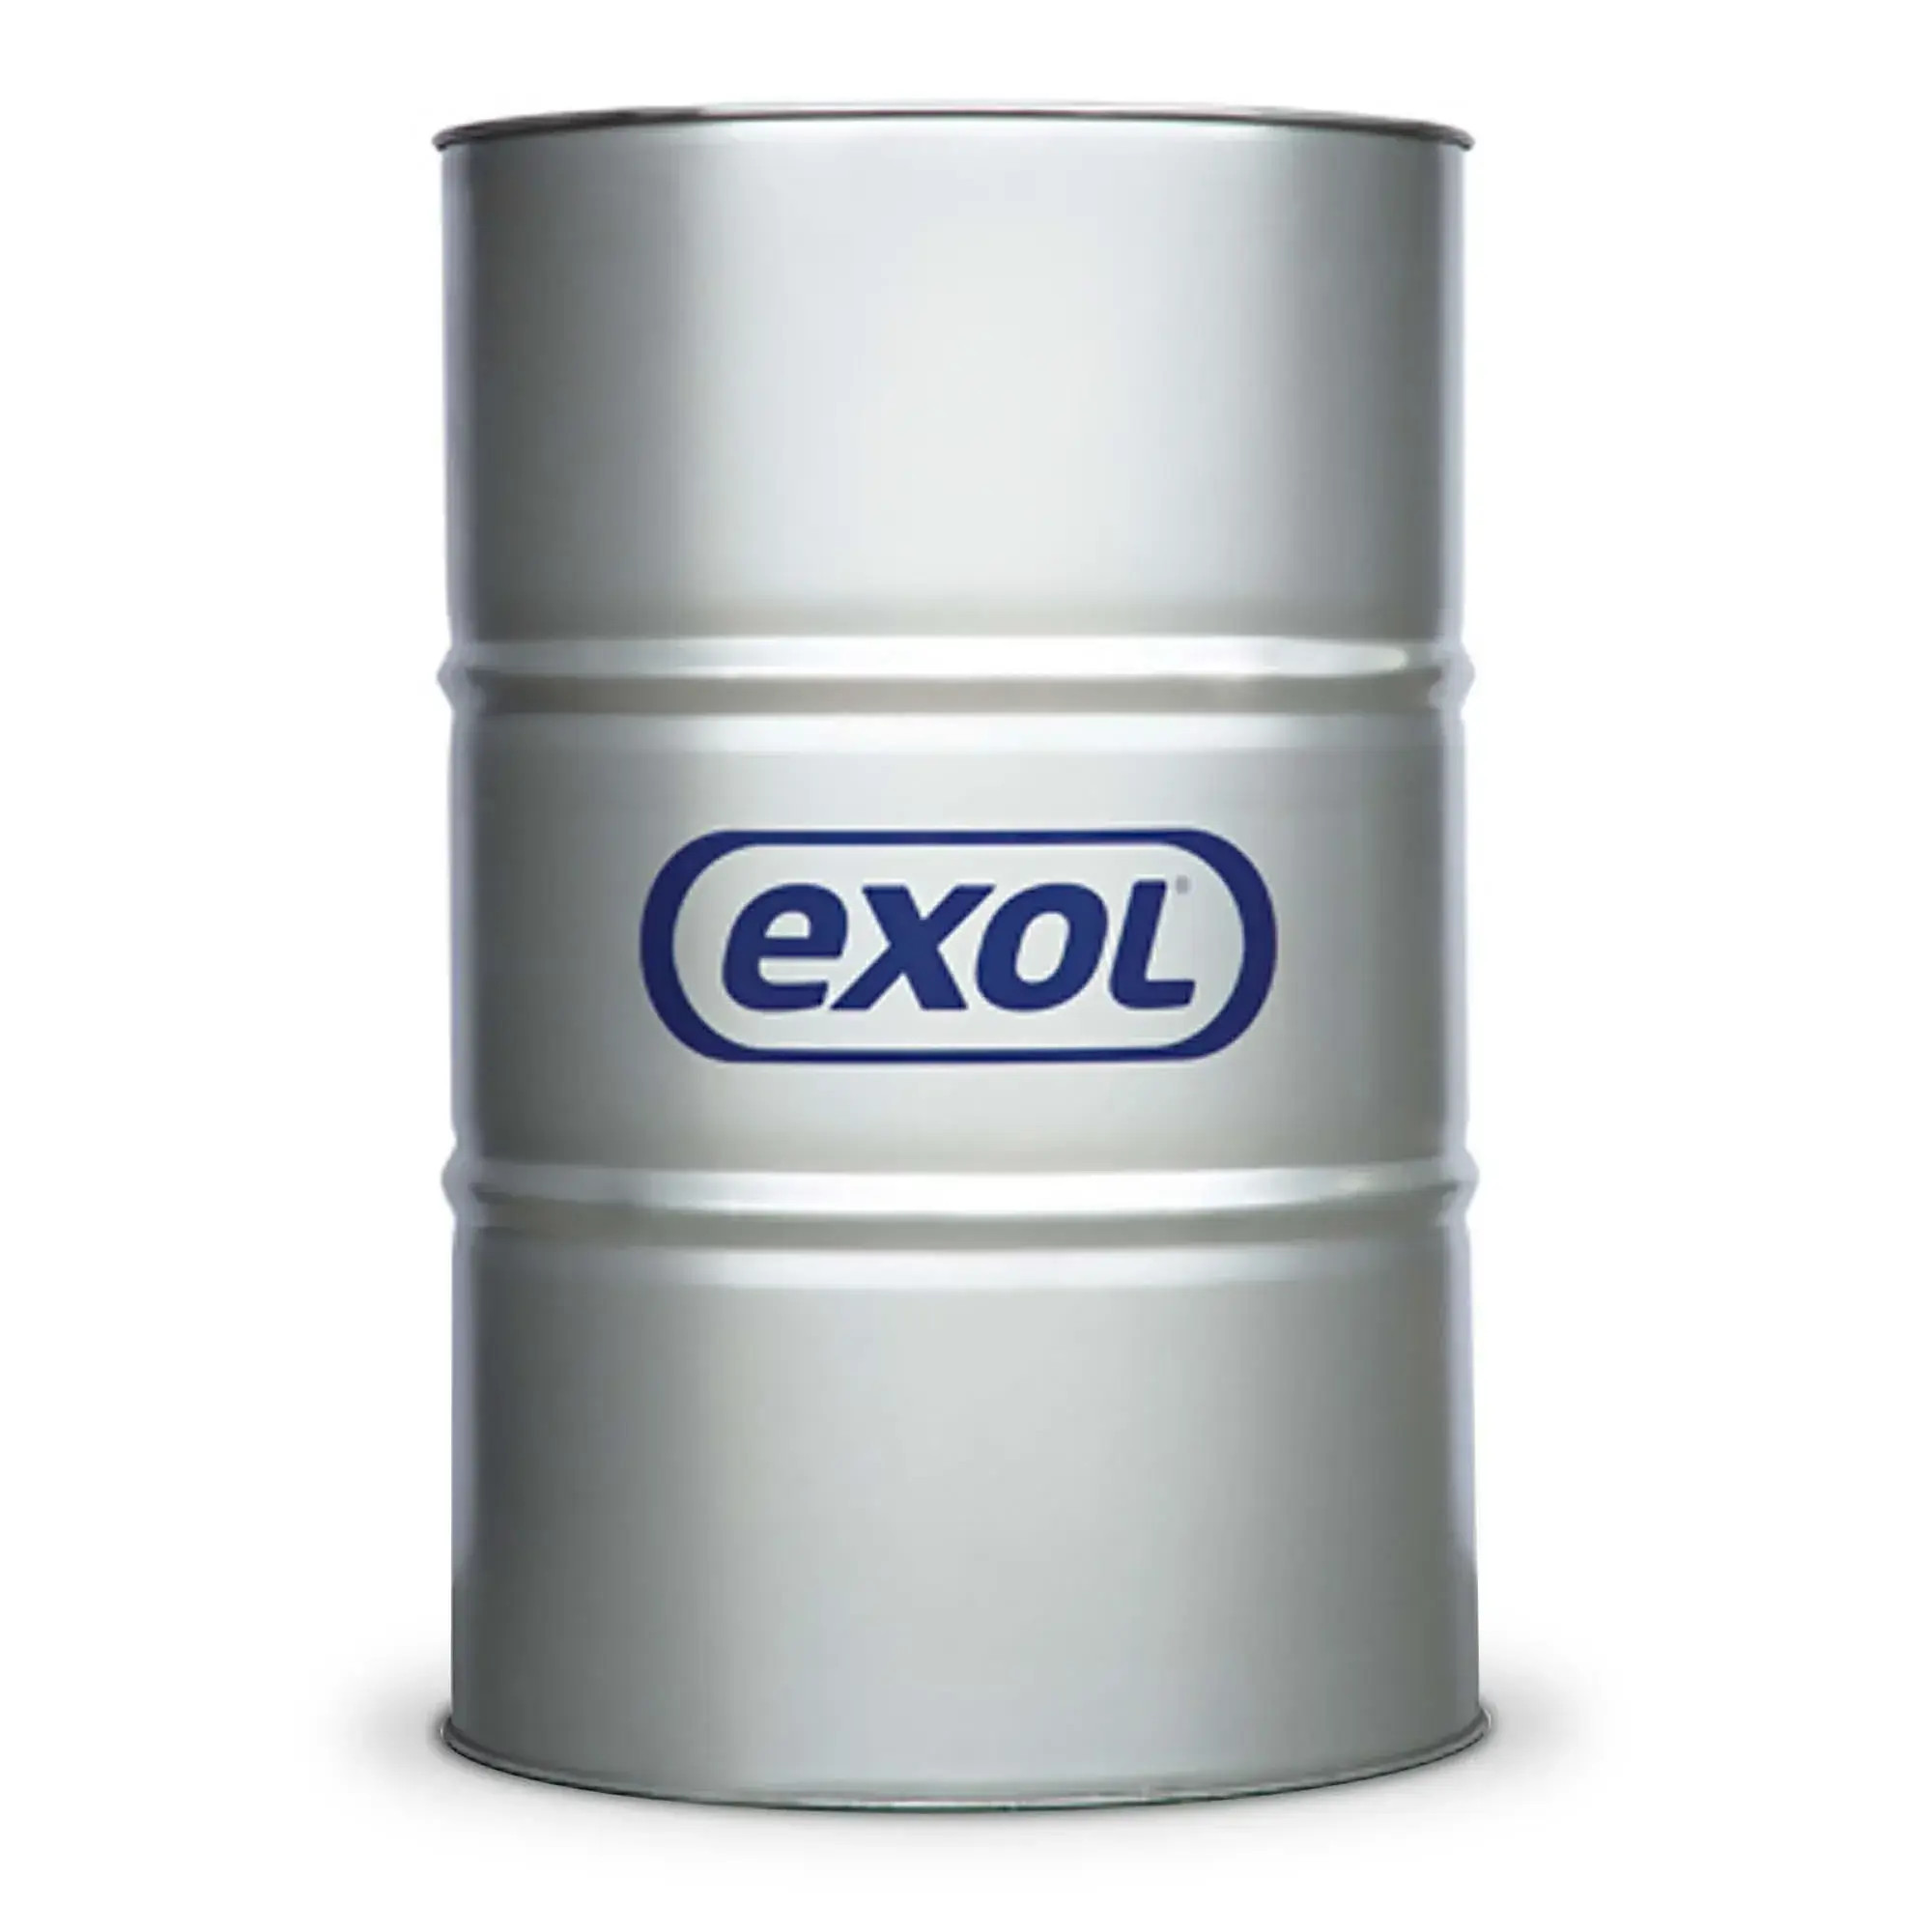 Exol Tachus Machine Tool Oil 68 205L